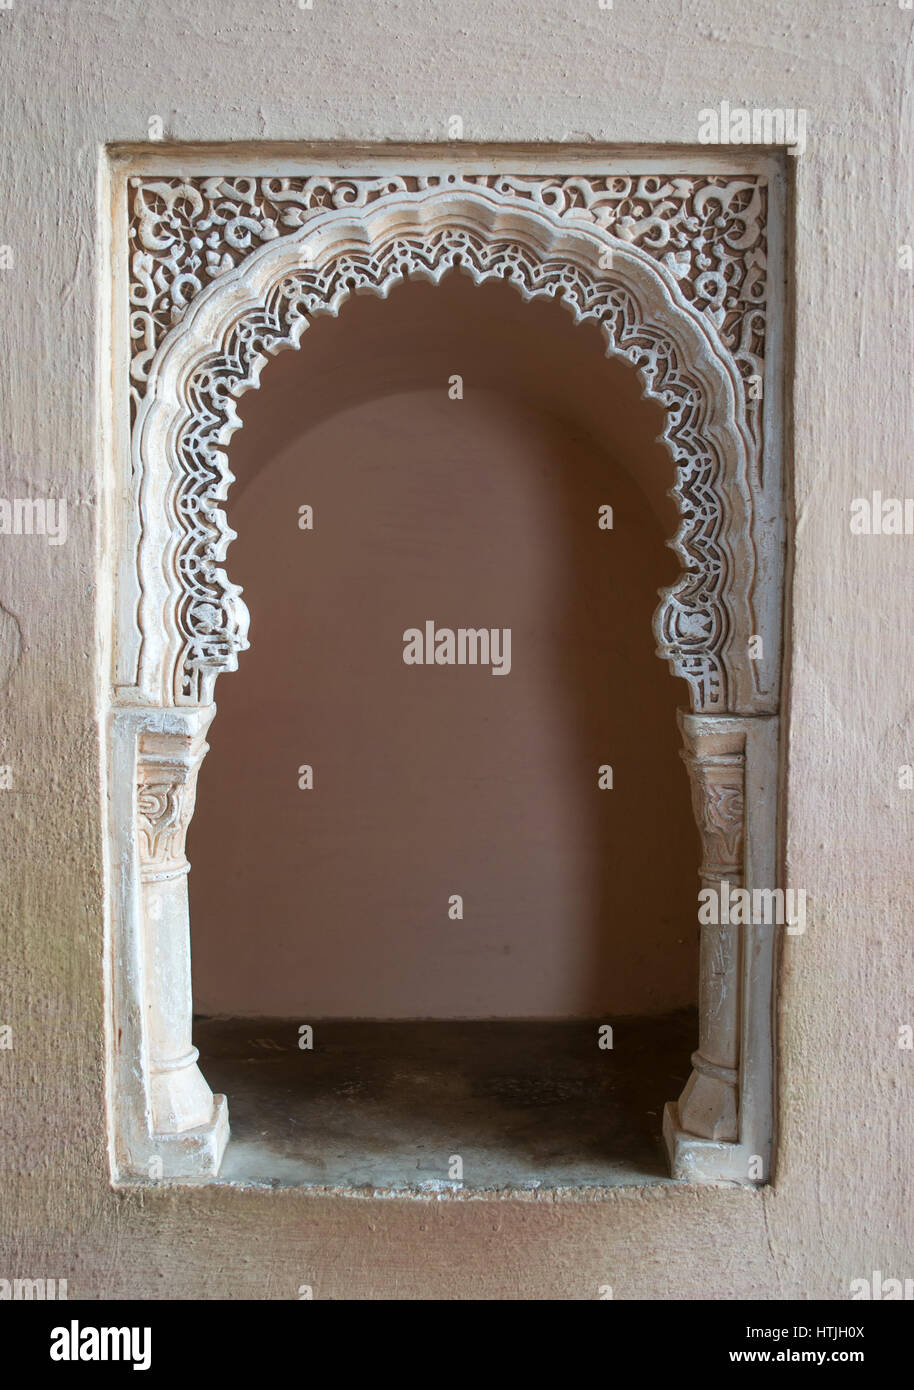 Décoré à l'intérieur de l'arche mauresque Alcazaba ou château maure, Malaga, Andalousie, Espagne, Europe Banque D'Images